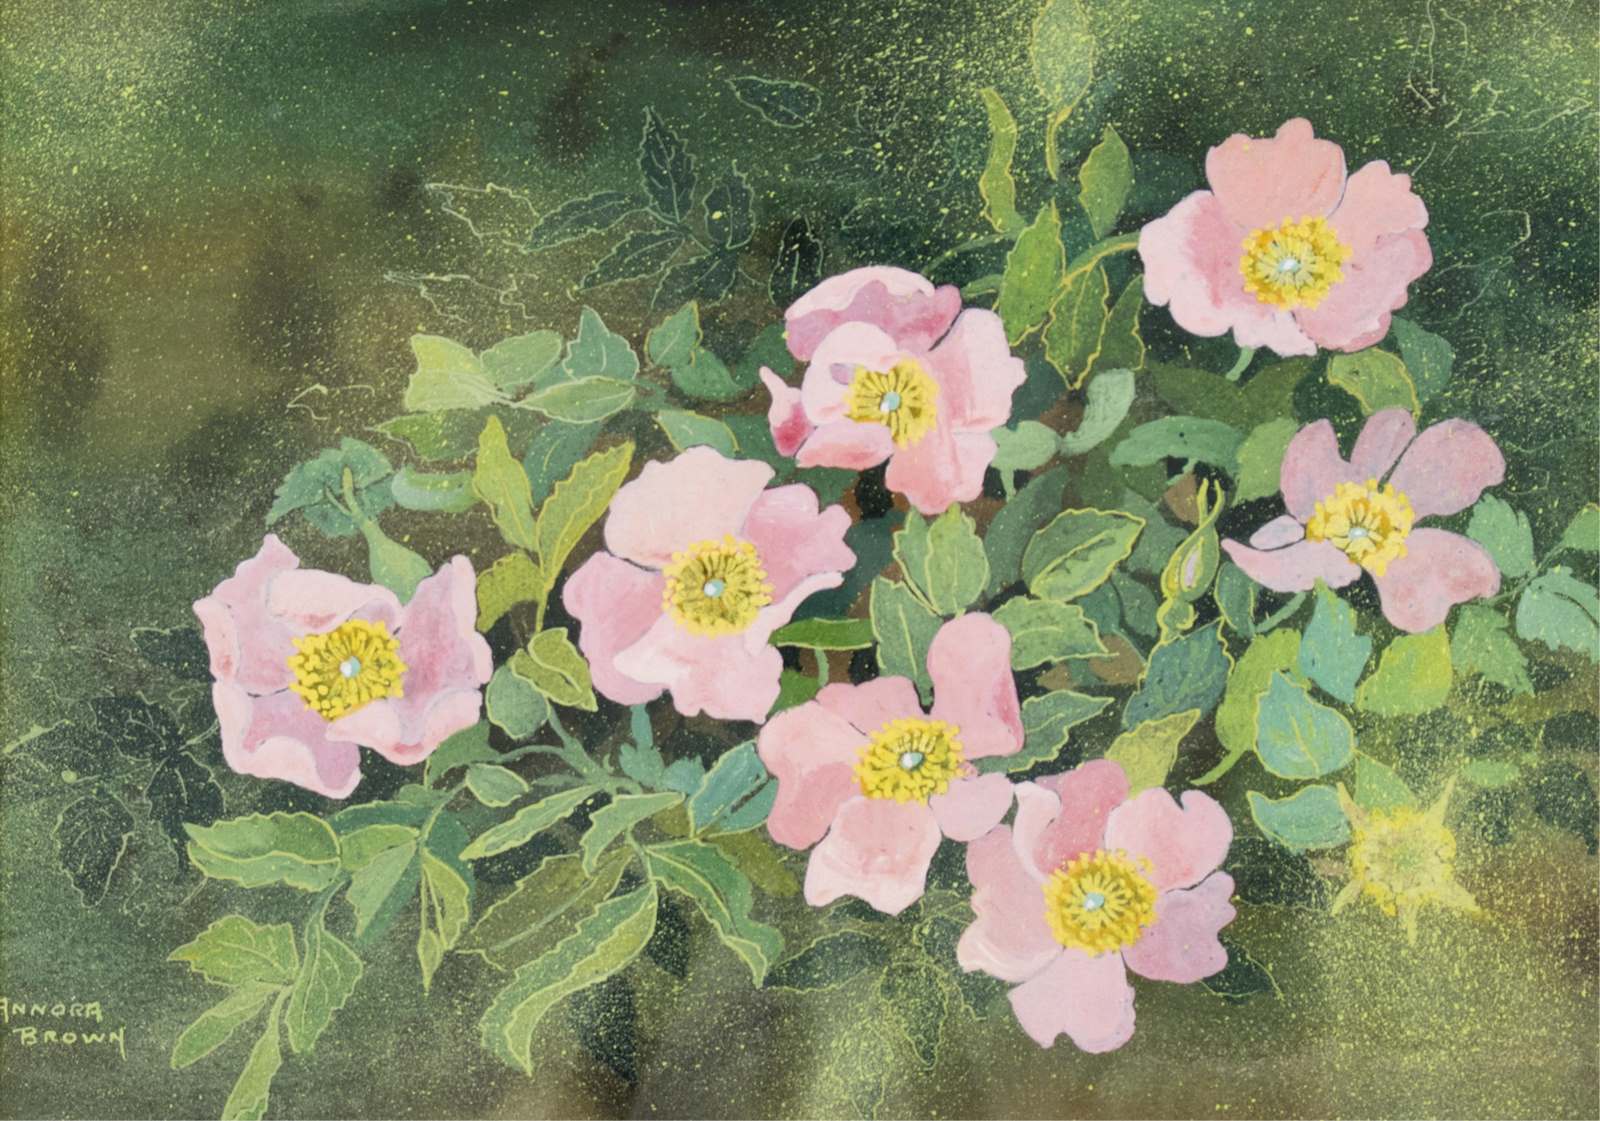 Annora Brown: Alberta Wild Roses